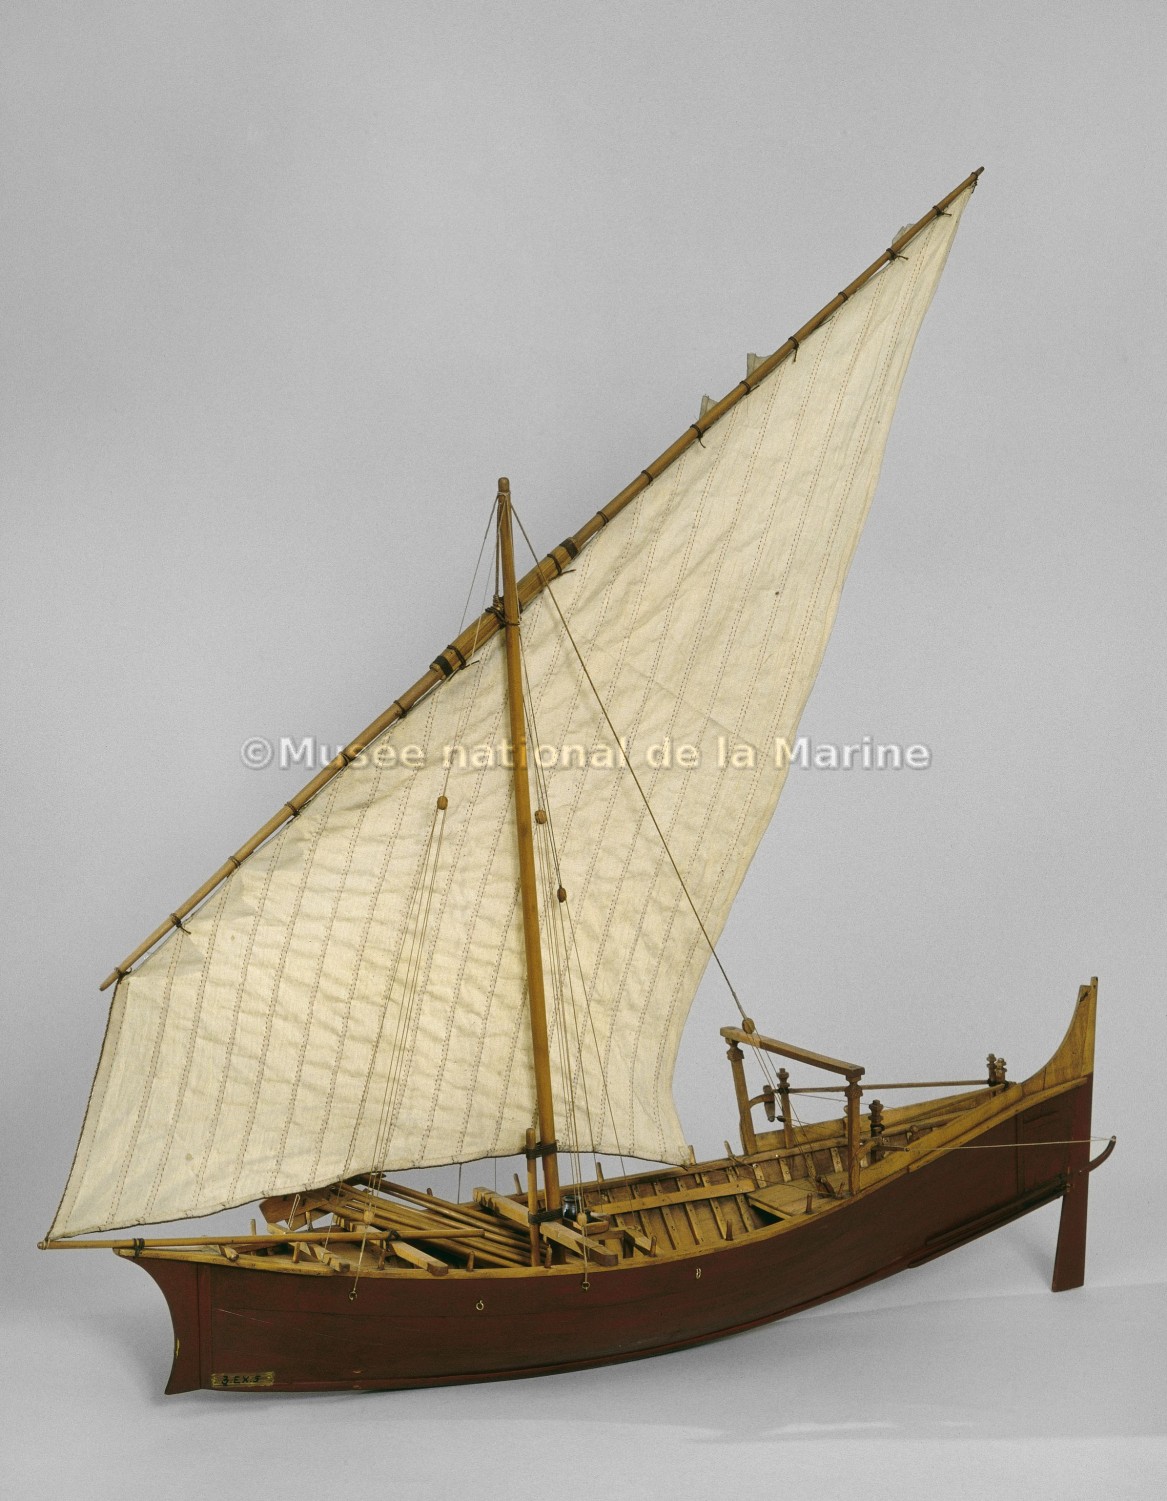 Beden safaï, bateau de pêche de Mascate, vue de 3/4 arrière